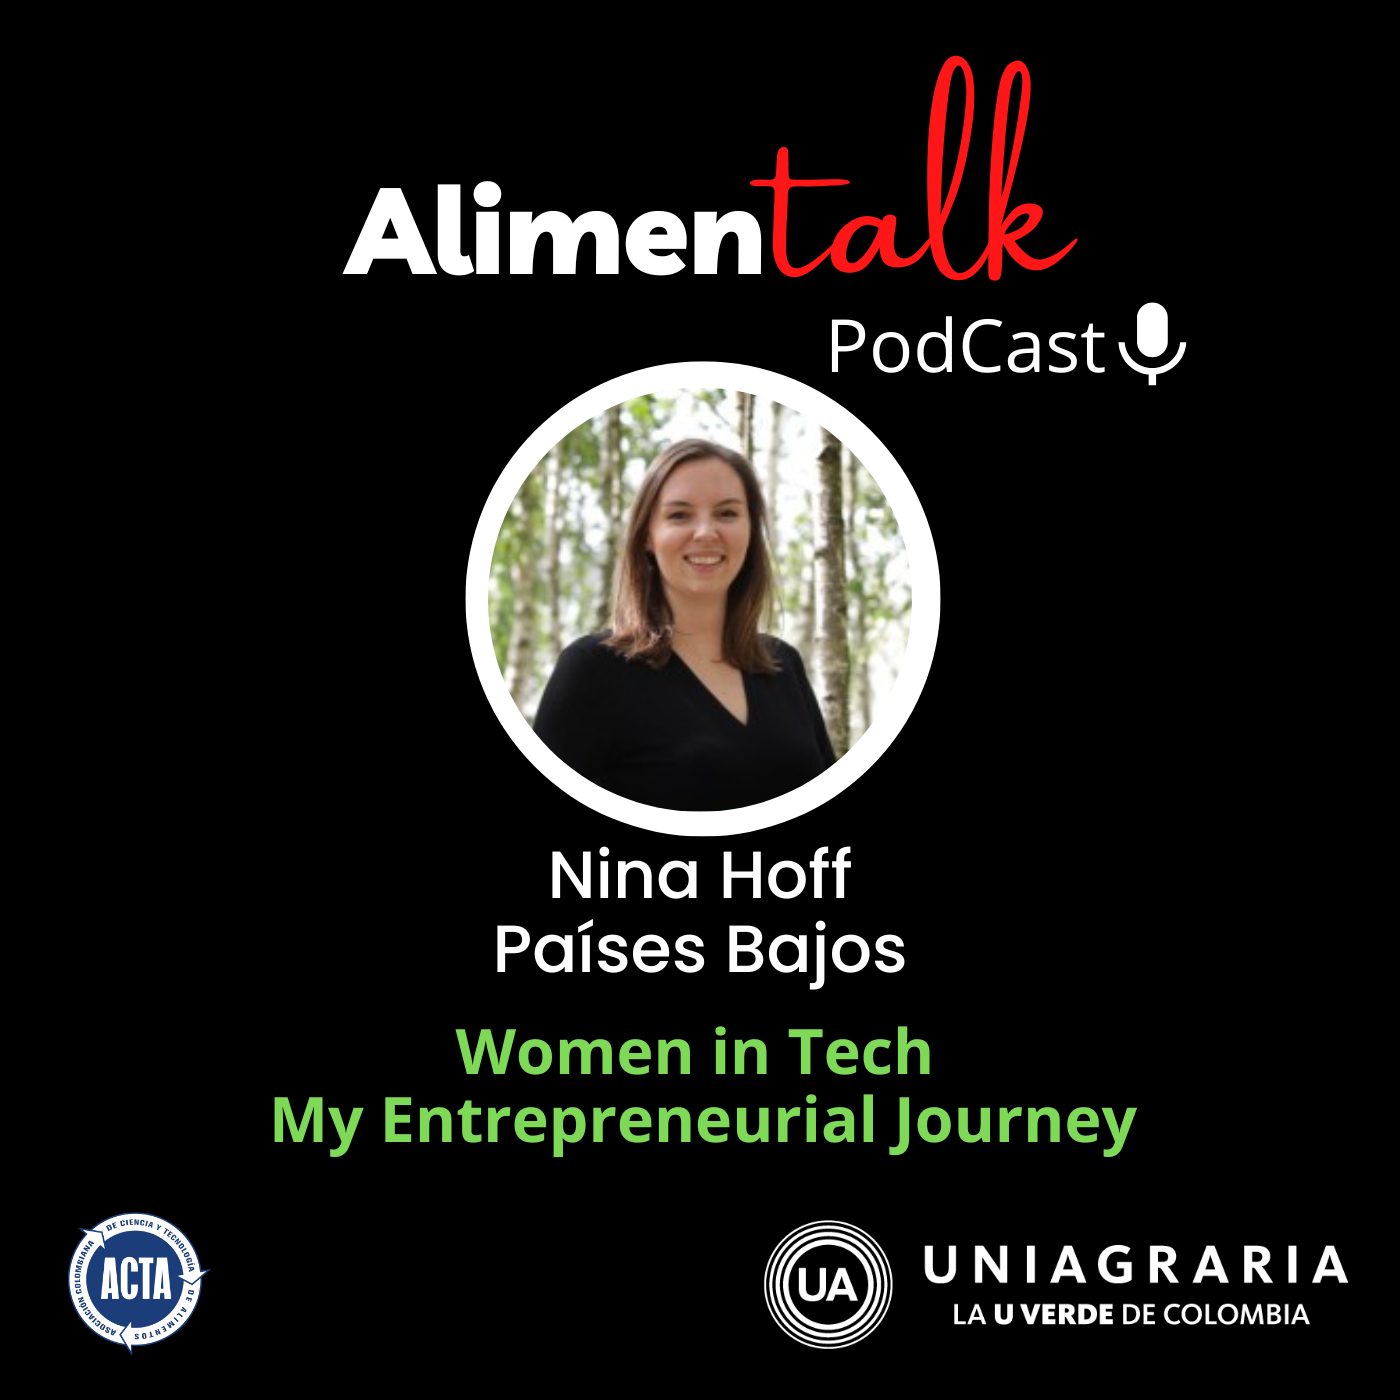 AlimenTalk podCast: Women in Tech my entrepreneurial journey